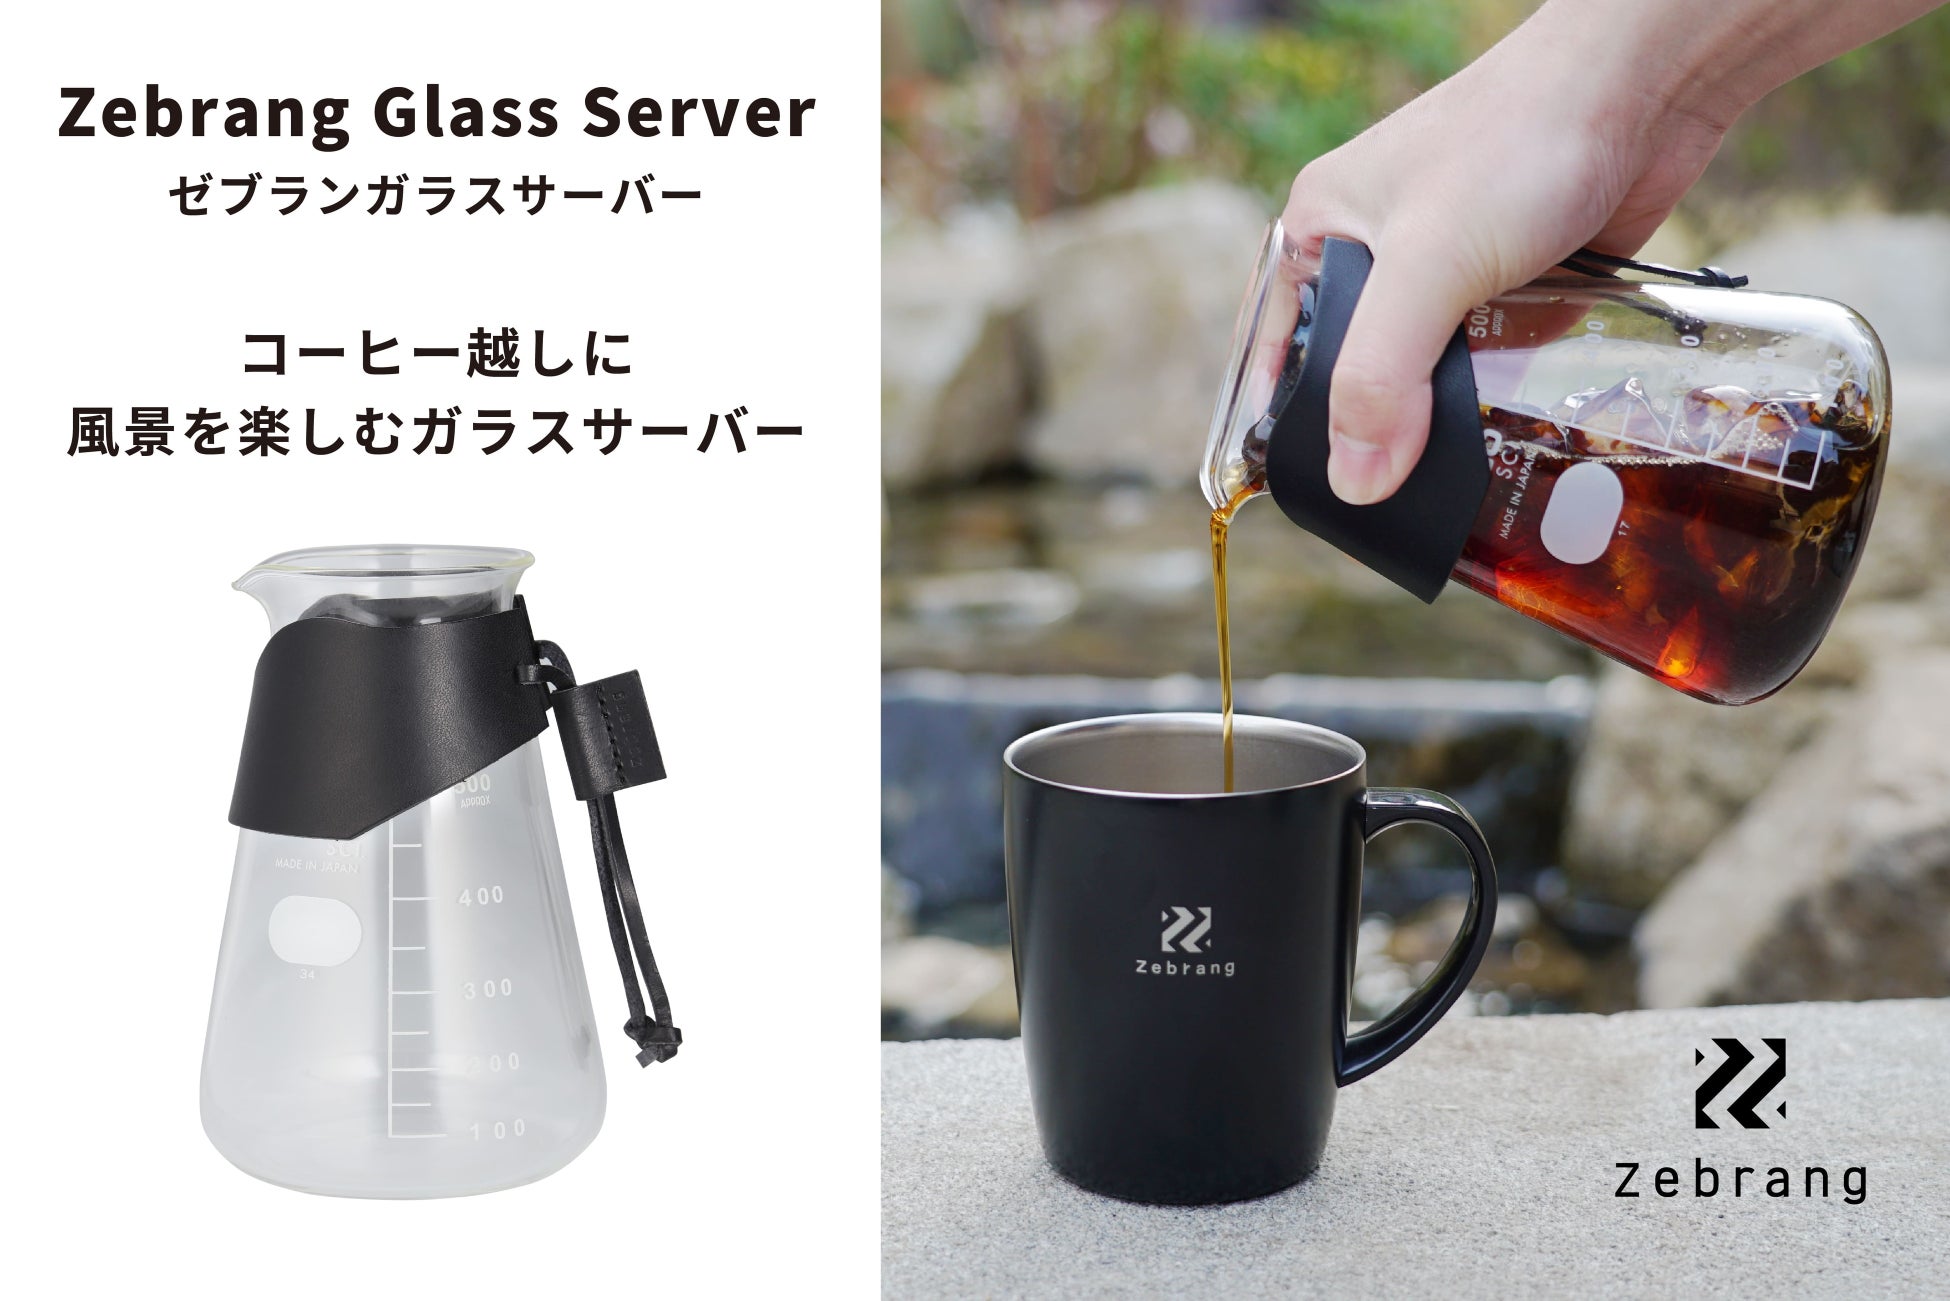 アウトドアでも使用できる牛革付きのガラス製コーヒーサーバー「ゼブランガラスサーバー」が新登場